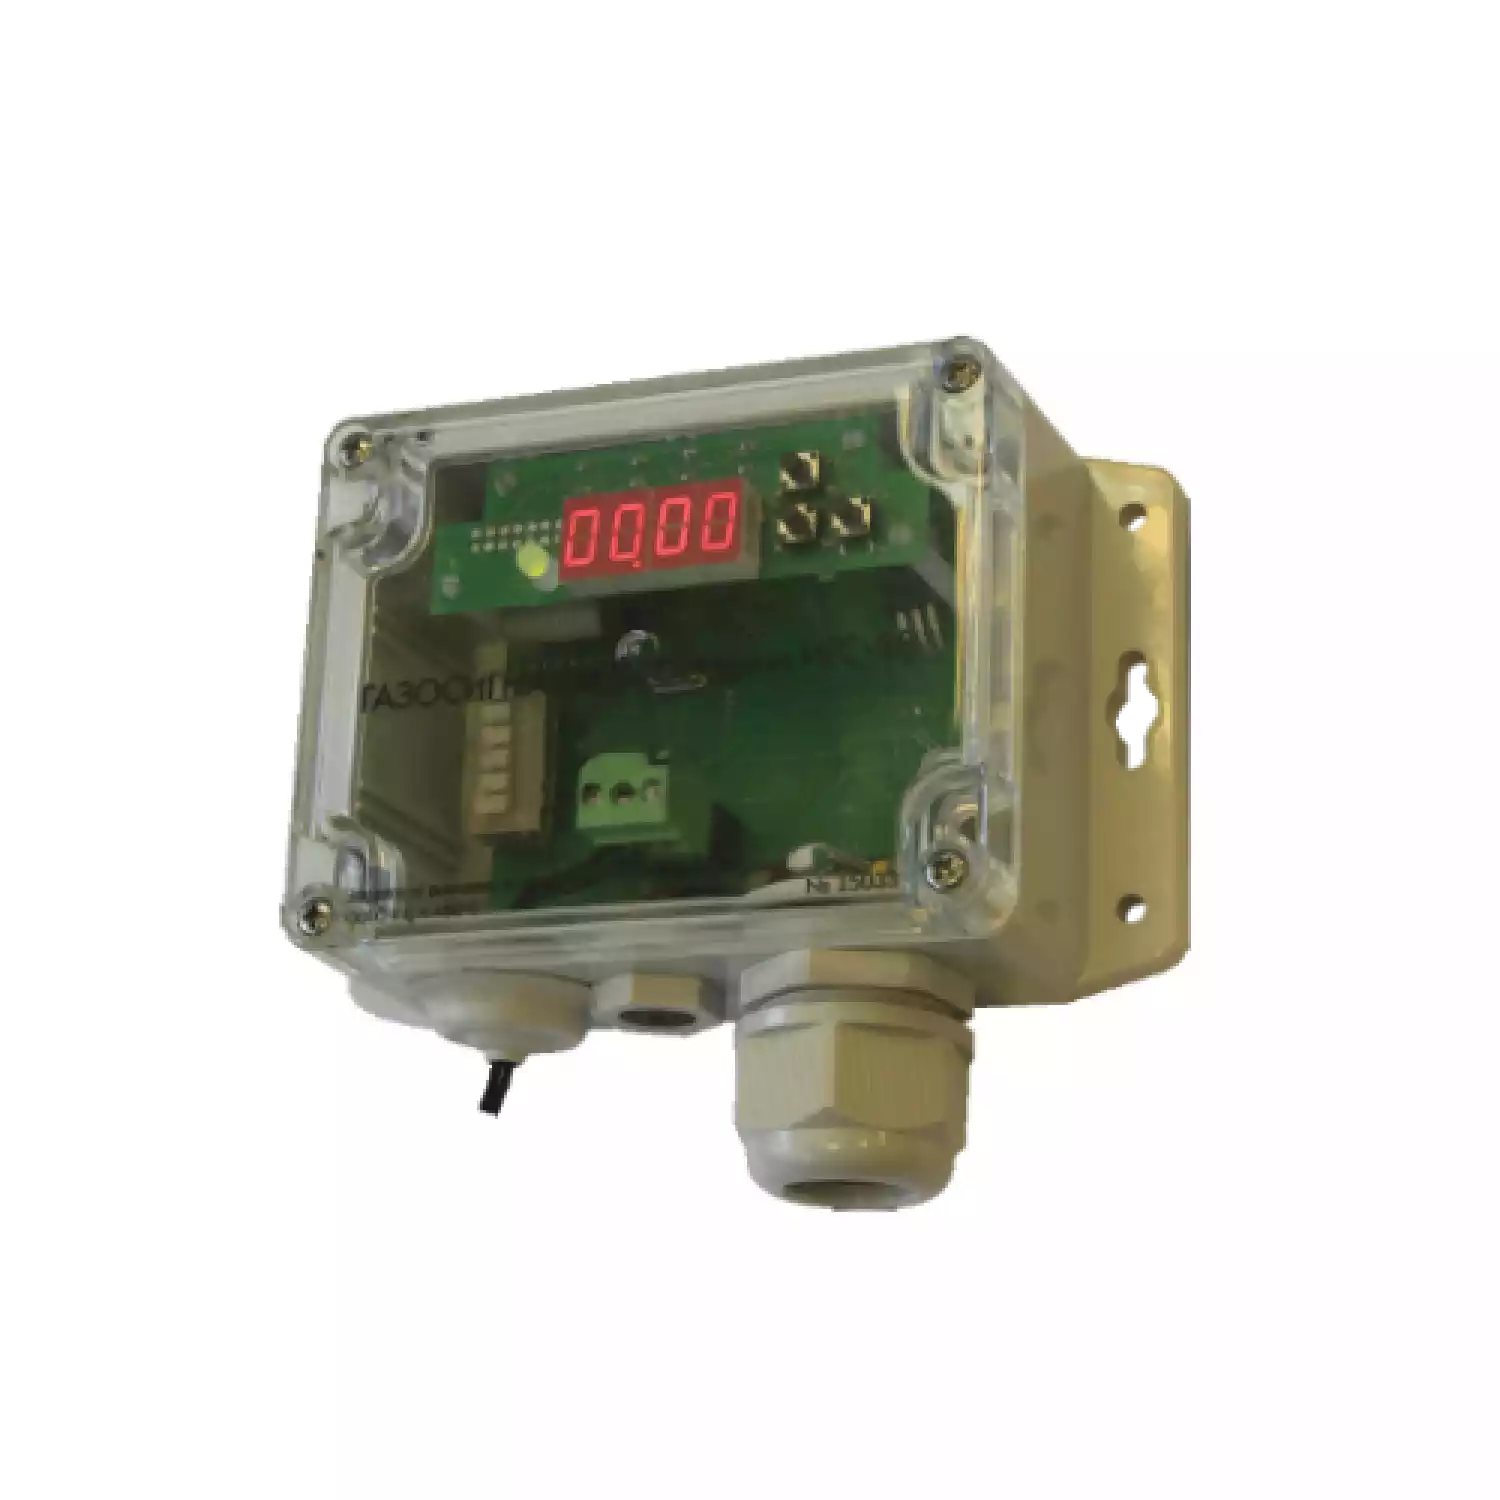 Клевер-СВ серии ИГС-98 газосигнализатор стационарный на кислород О2 исполнение 011 - 1